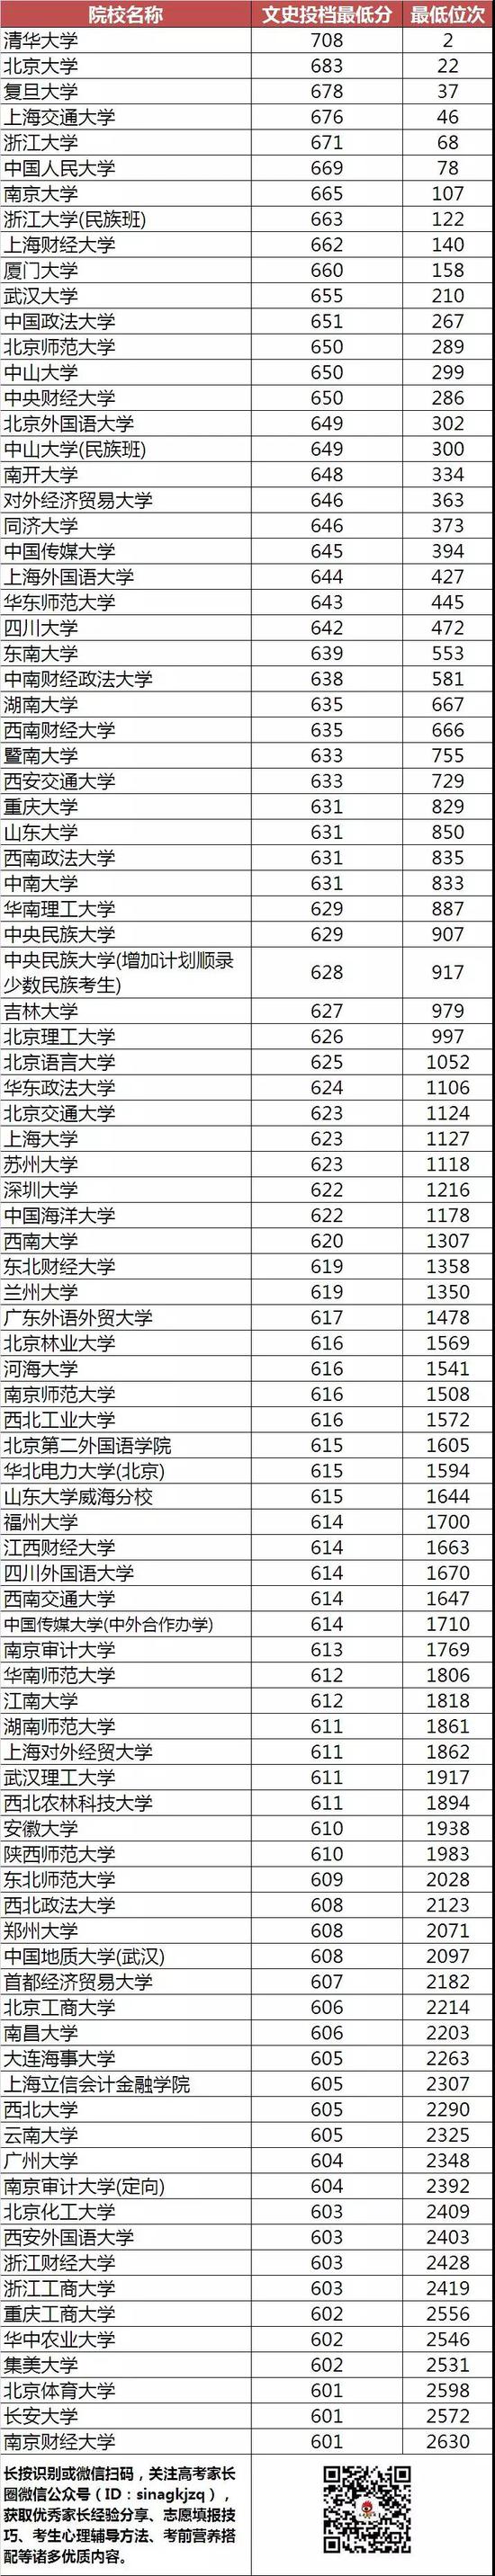 不同分数段考生可报考的高校盘点(贵州)